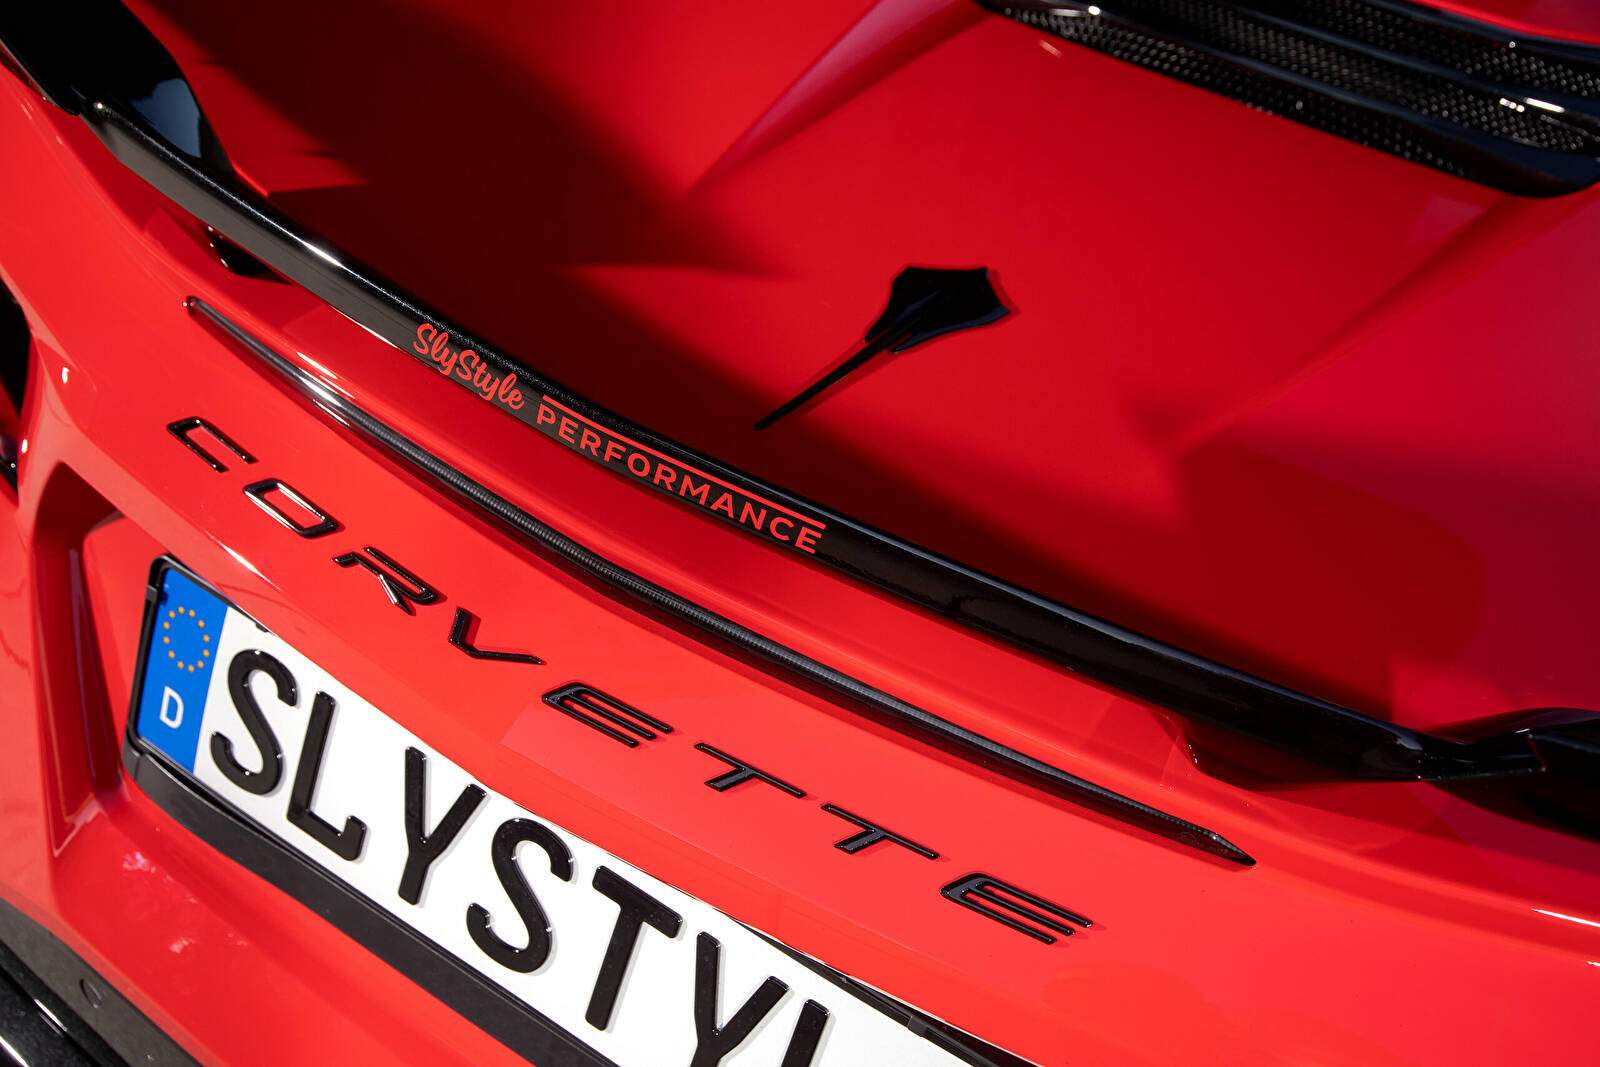 SlyStyle Corvette Stingray Convertible (2022),  ajouté par fox58